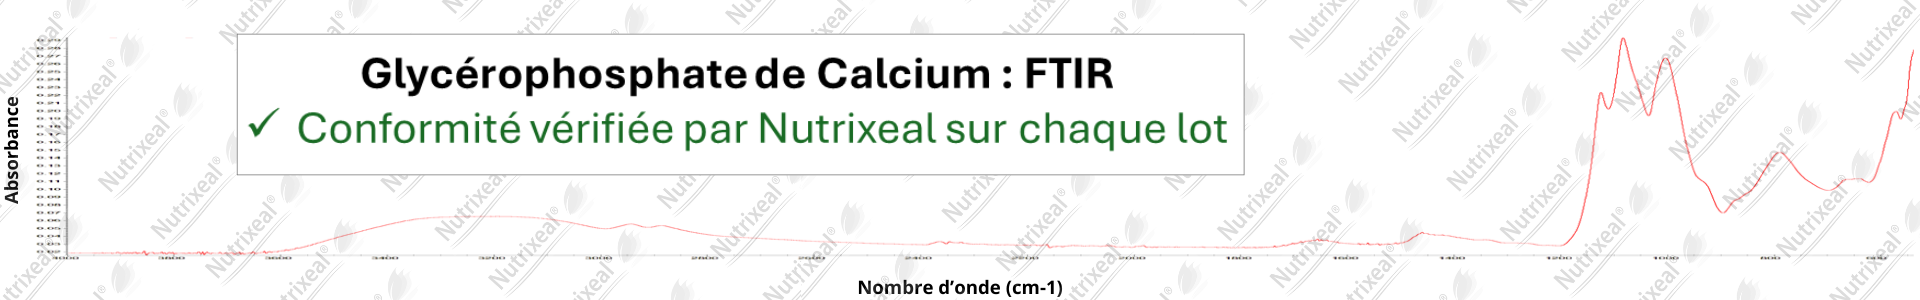 Spectre FTIR du glycérophosphate de calcium